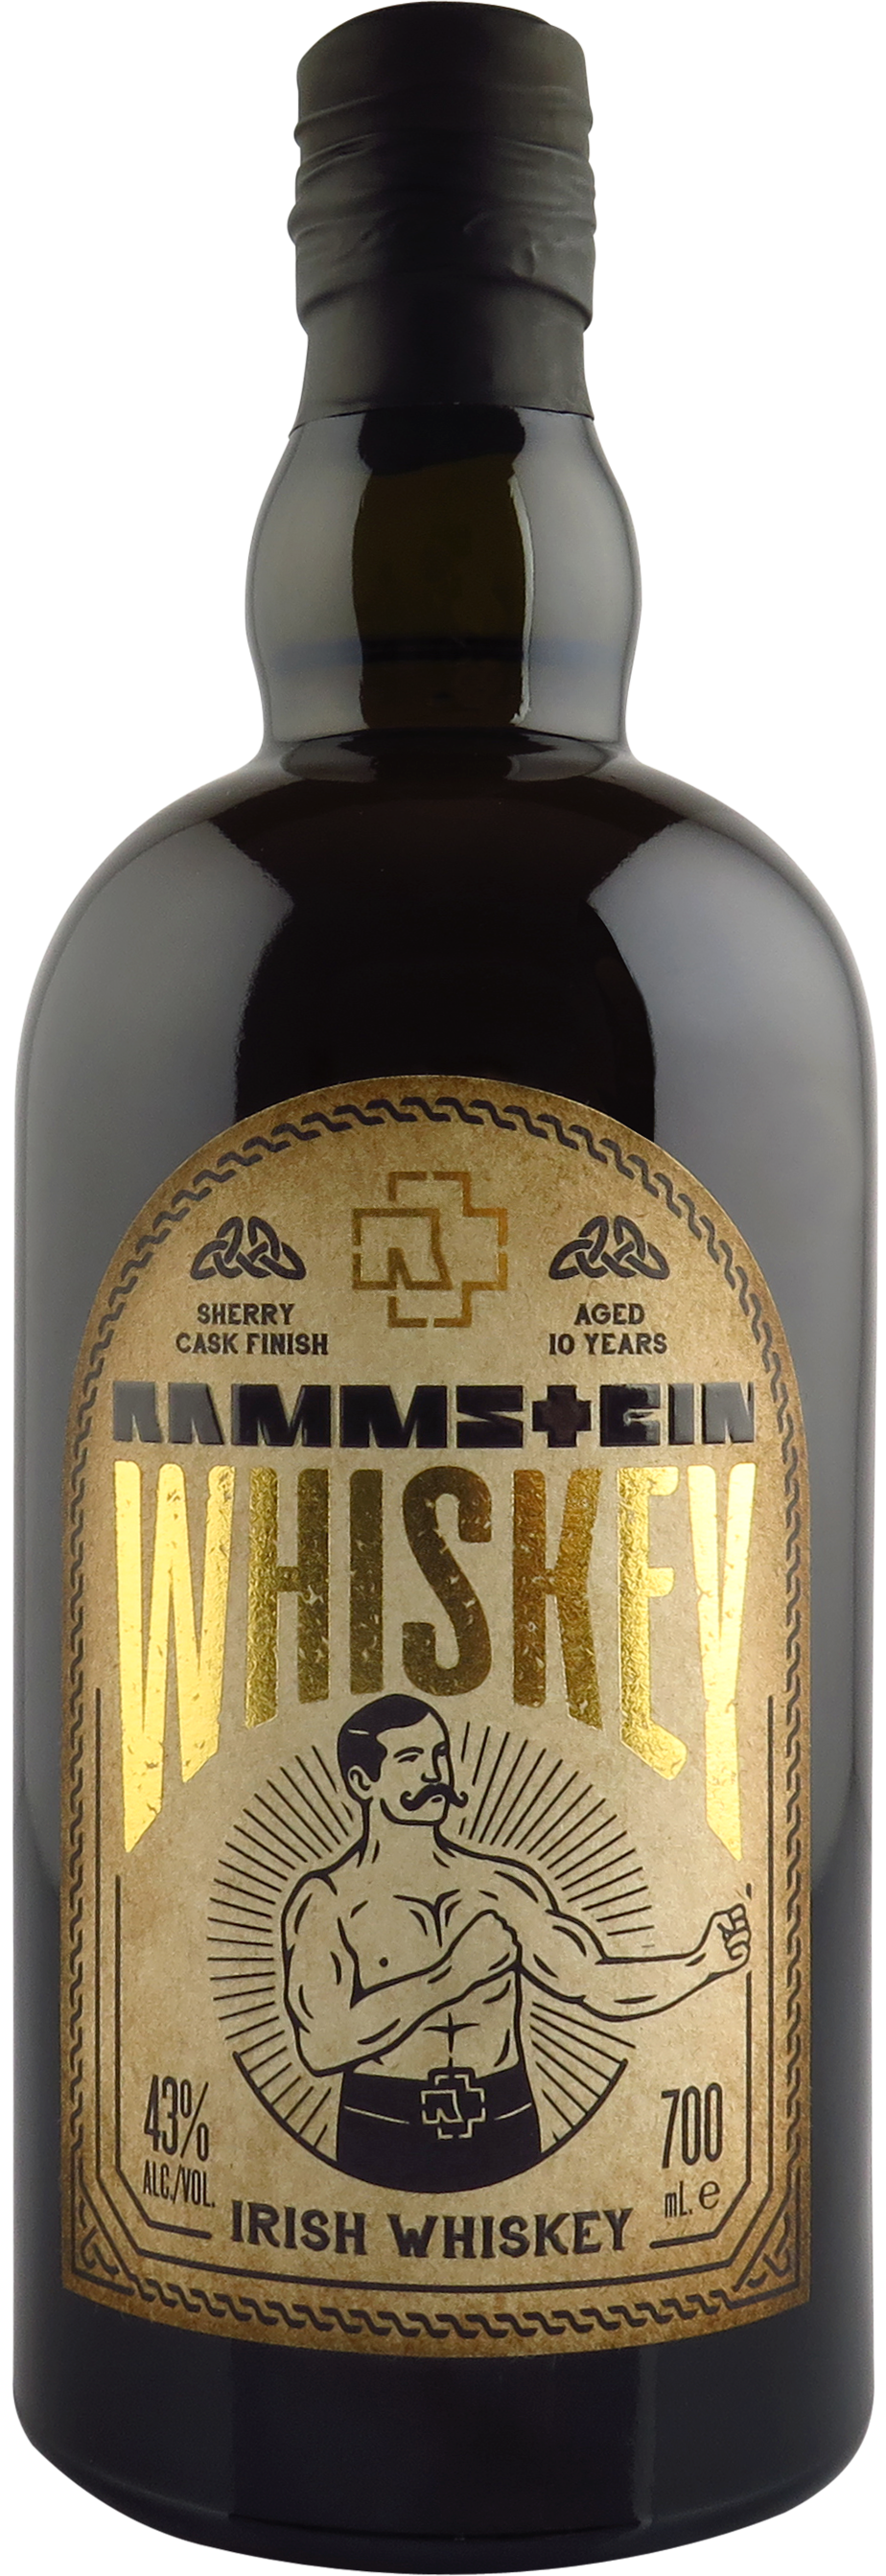 Rammstein Whiskey